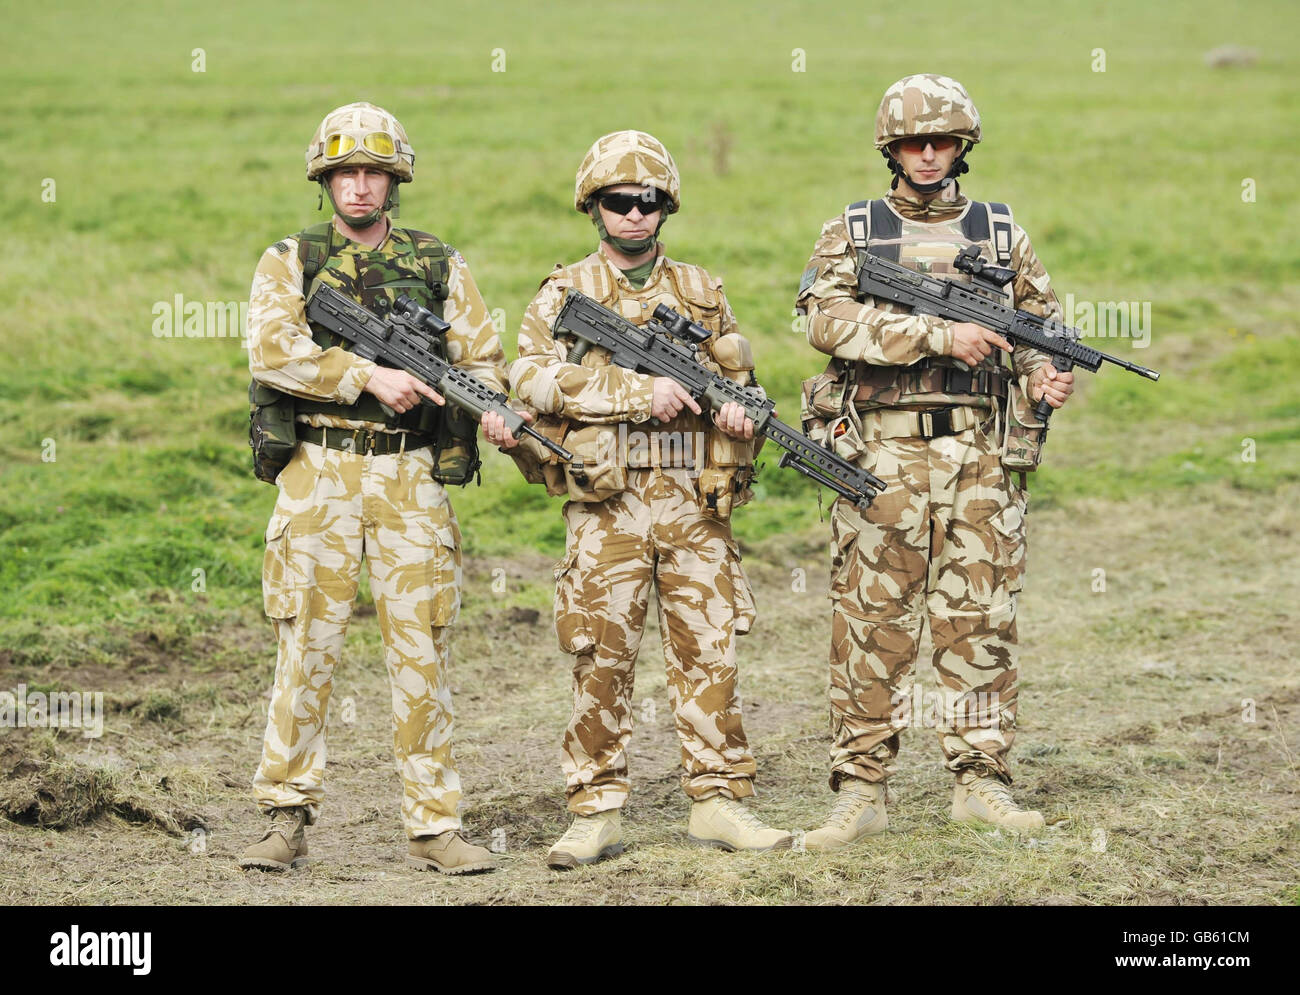 Un confronto tra le armi dell'esercito britannico. A sinistra si trova l'arma e la divisa SA80 rilasciate prima del 2003. Al centro c'è un soldato con una SA80 A2 LSW attualmente emessa (si noti che la SA80 è ancora rilasciato e il LSW completa la potenza di fuoco all'interno di una squadra di fuoco. Non si tratta di un modello nuovo o di una sostituzione del SA80). A destra è presente un kit di usura per saldatura in fase di prova con una nuova variante di prova del SA80. Foto Stock